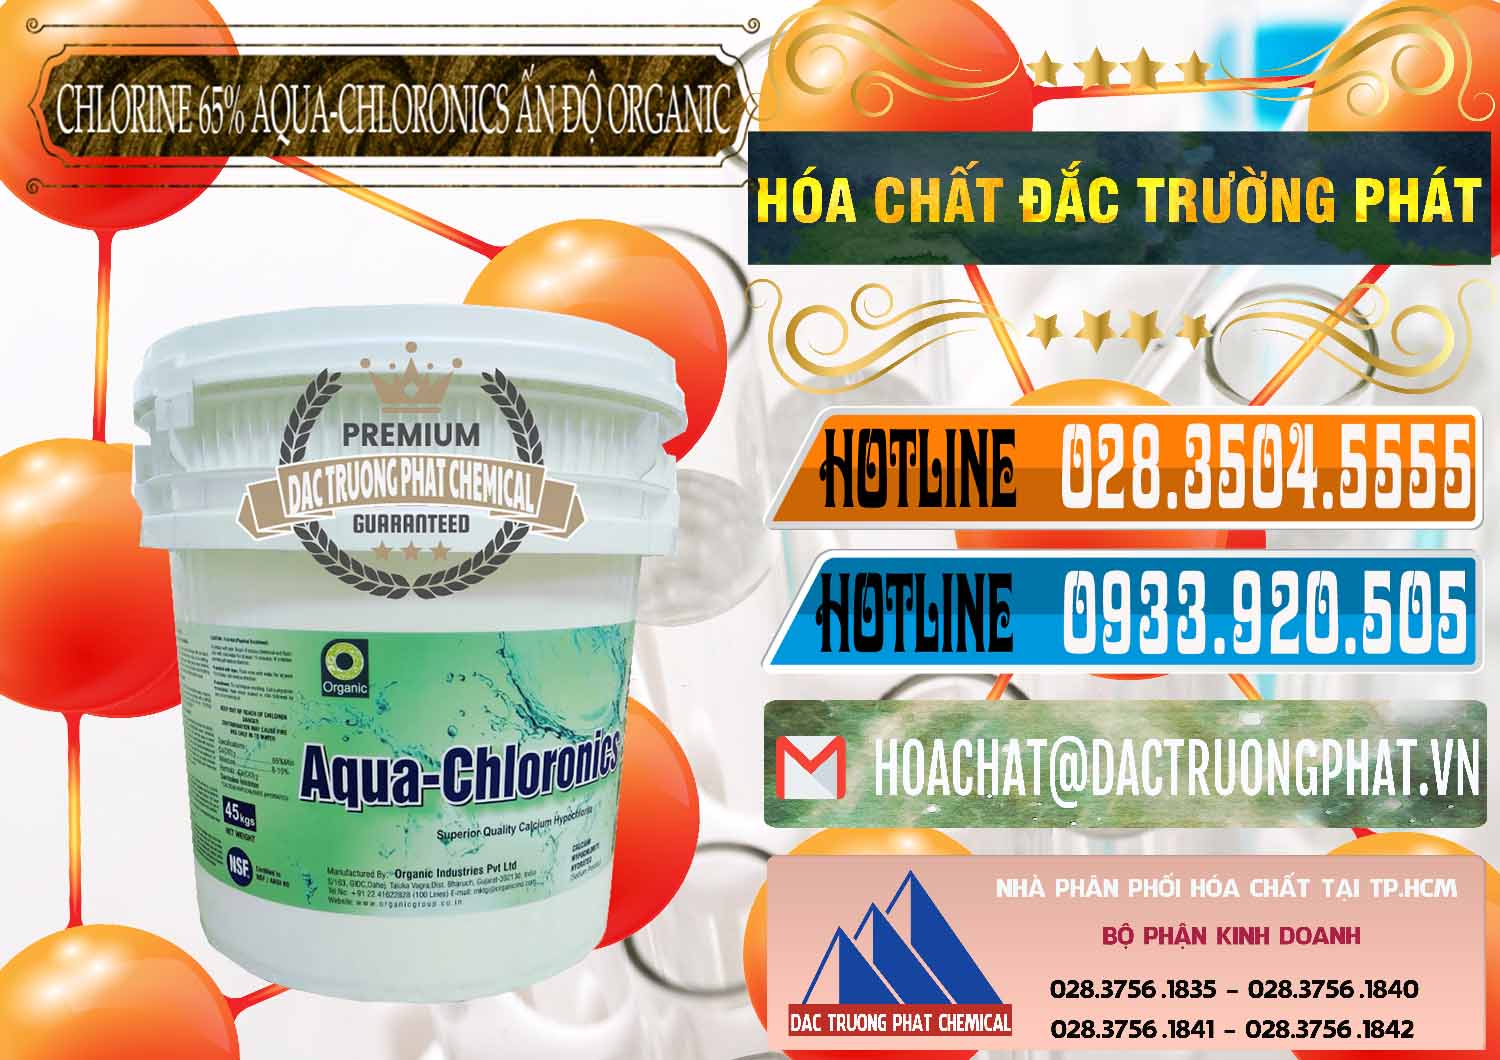 Công ty chuyên phân phối & bán Chlorine – Clorin 65% Aqua-Chloronics Ấn Độ Organic India - 0210 - Cung cấp & phân phối hóa chất tại TP.HCM - stmp.net